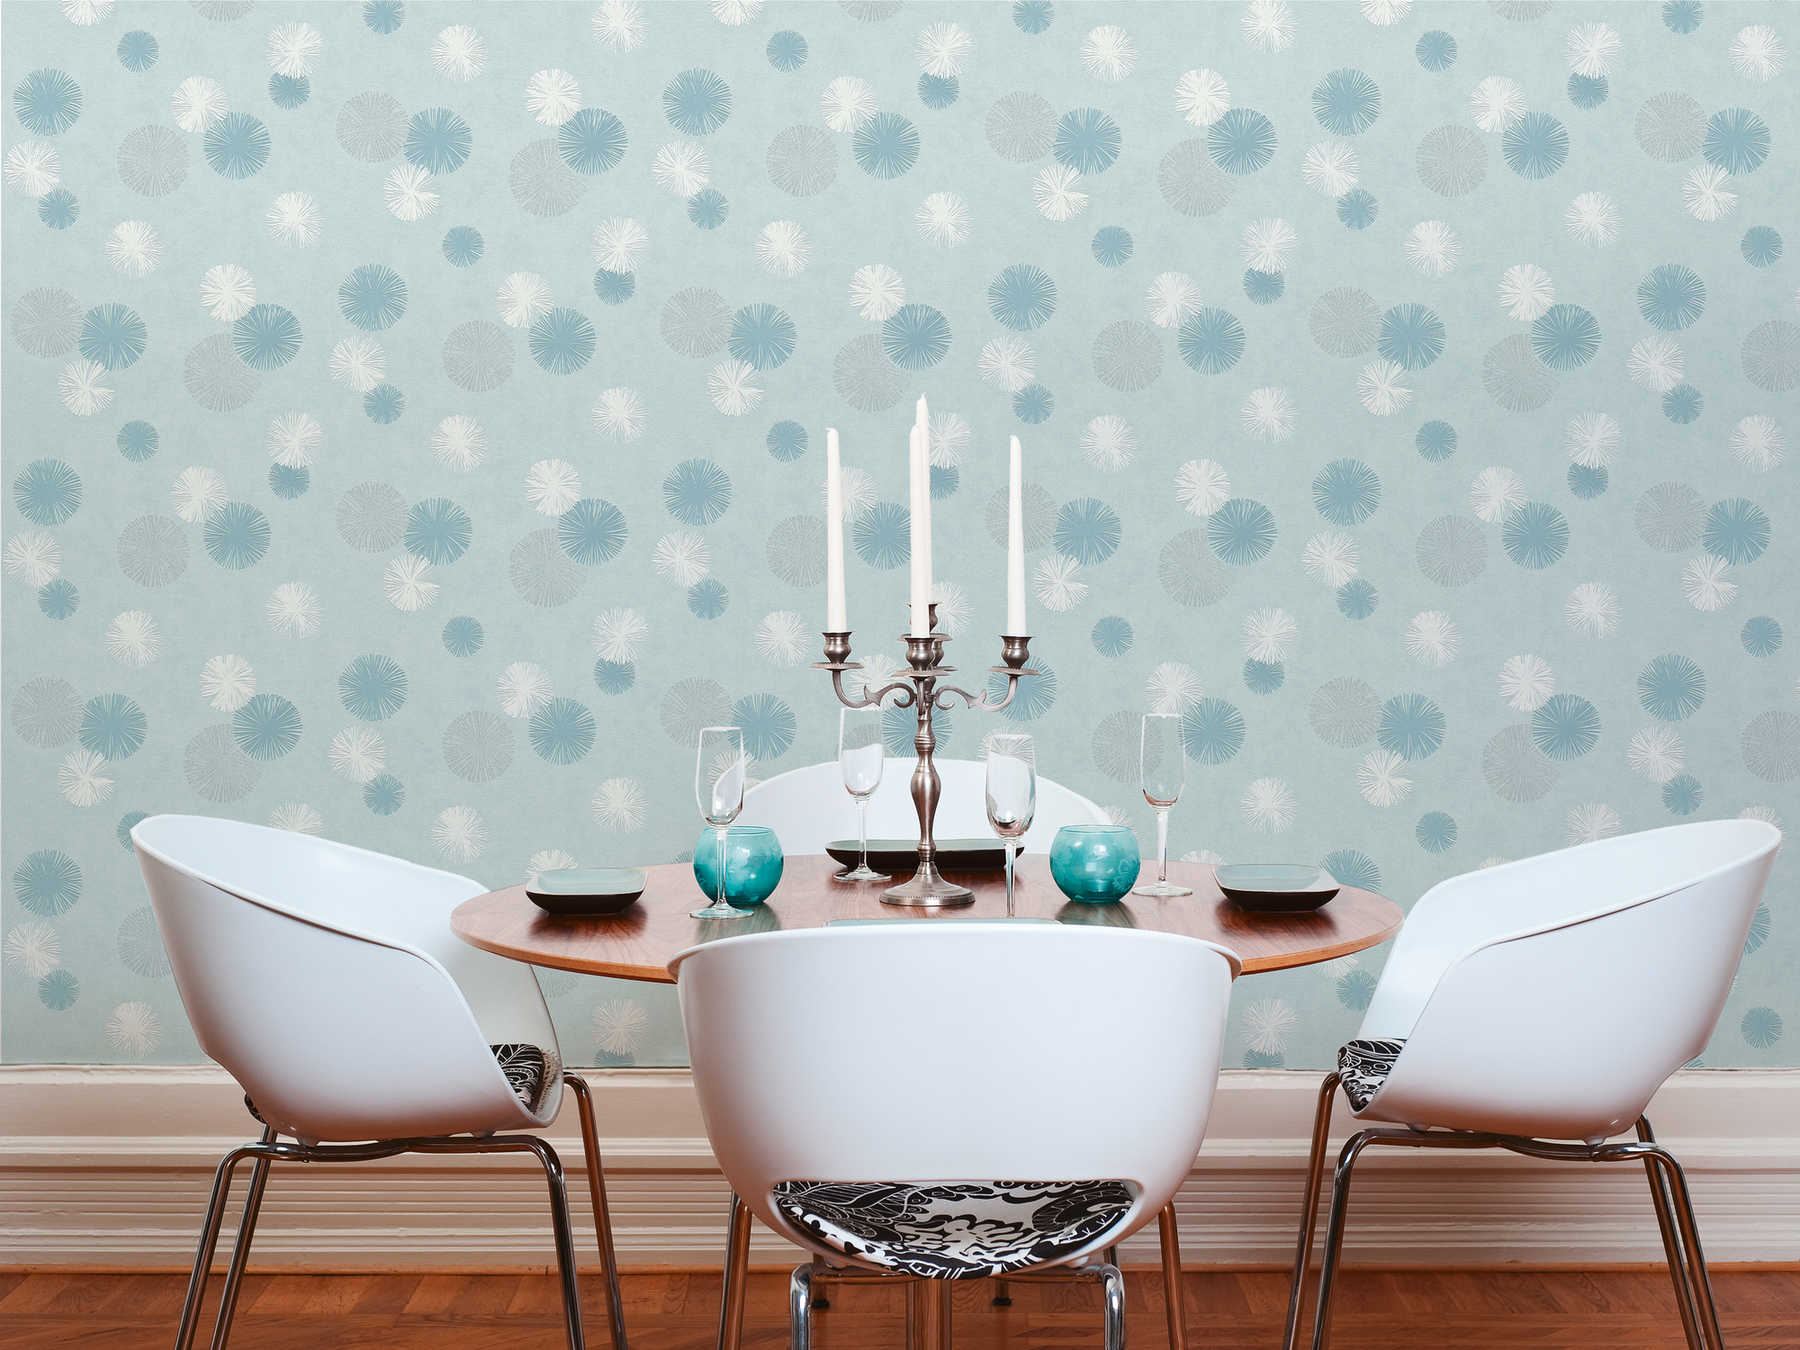             Mint green non-woven wallpaper with modern design - blue
        